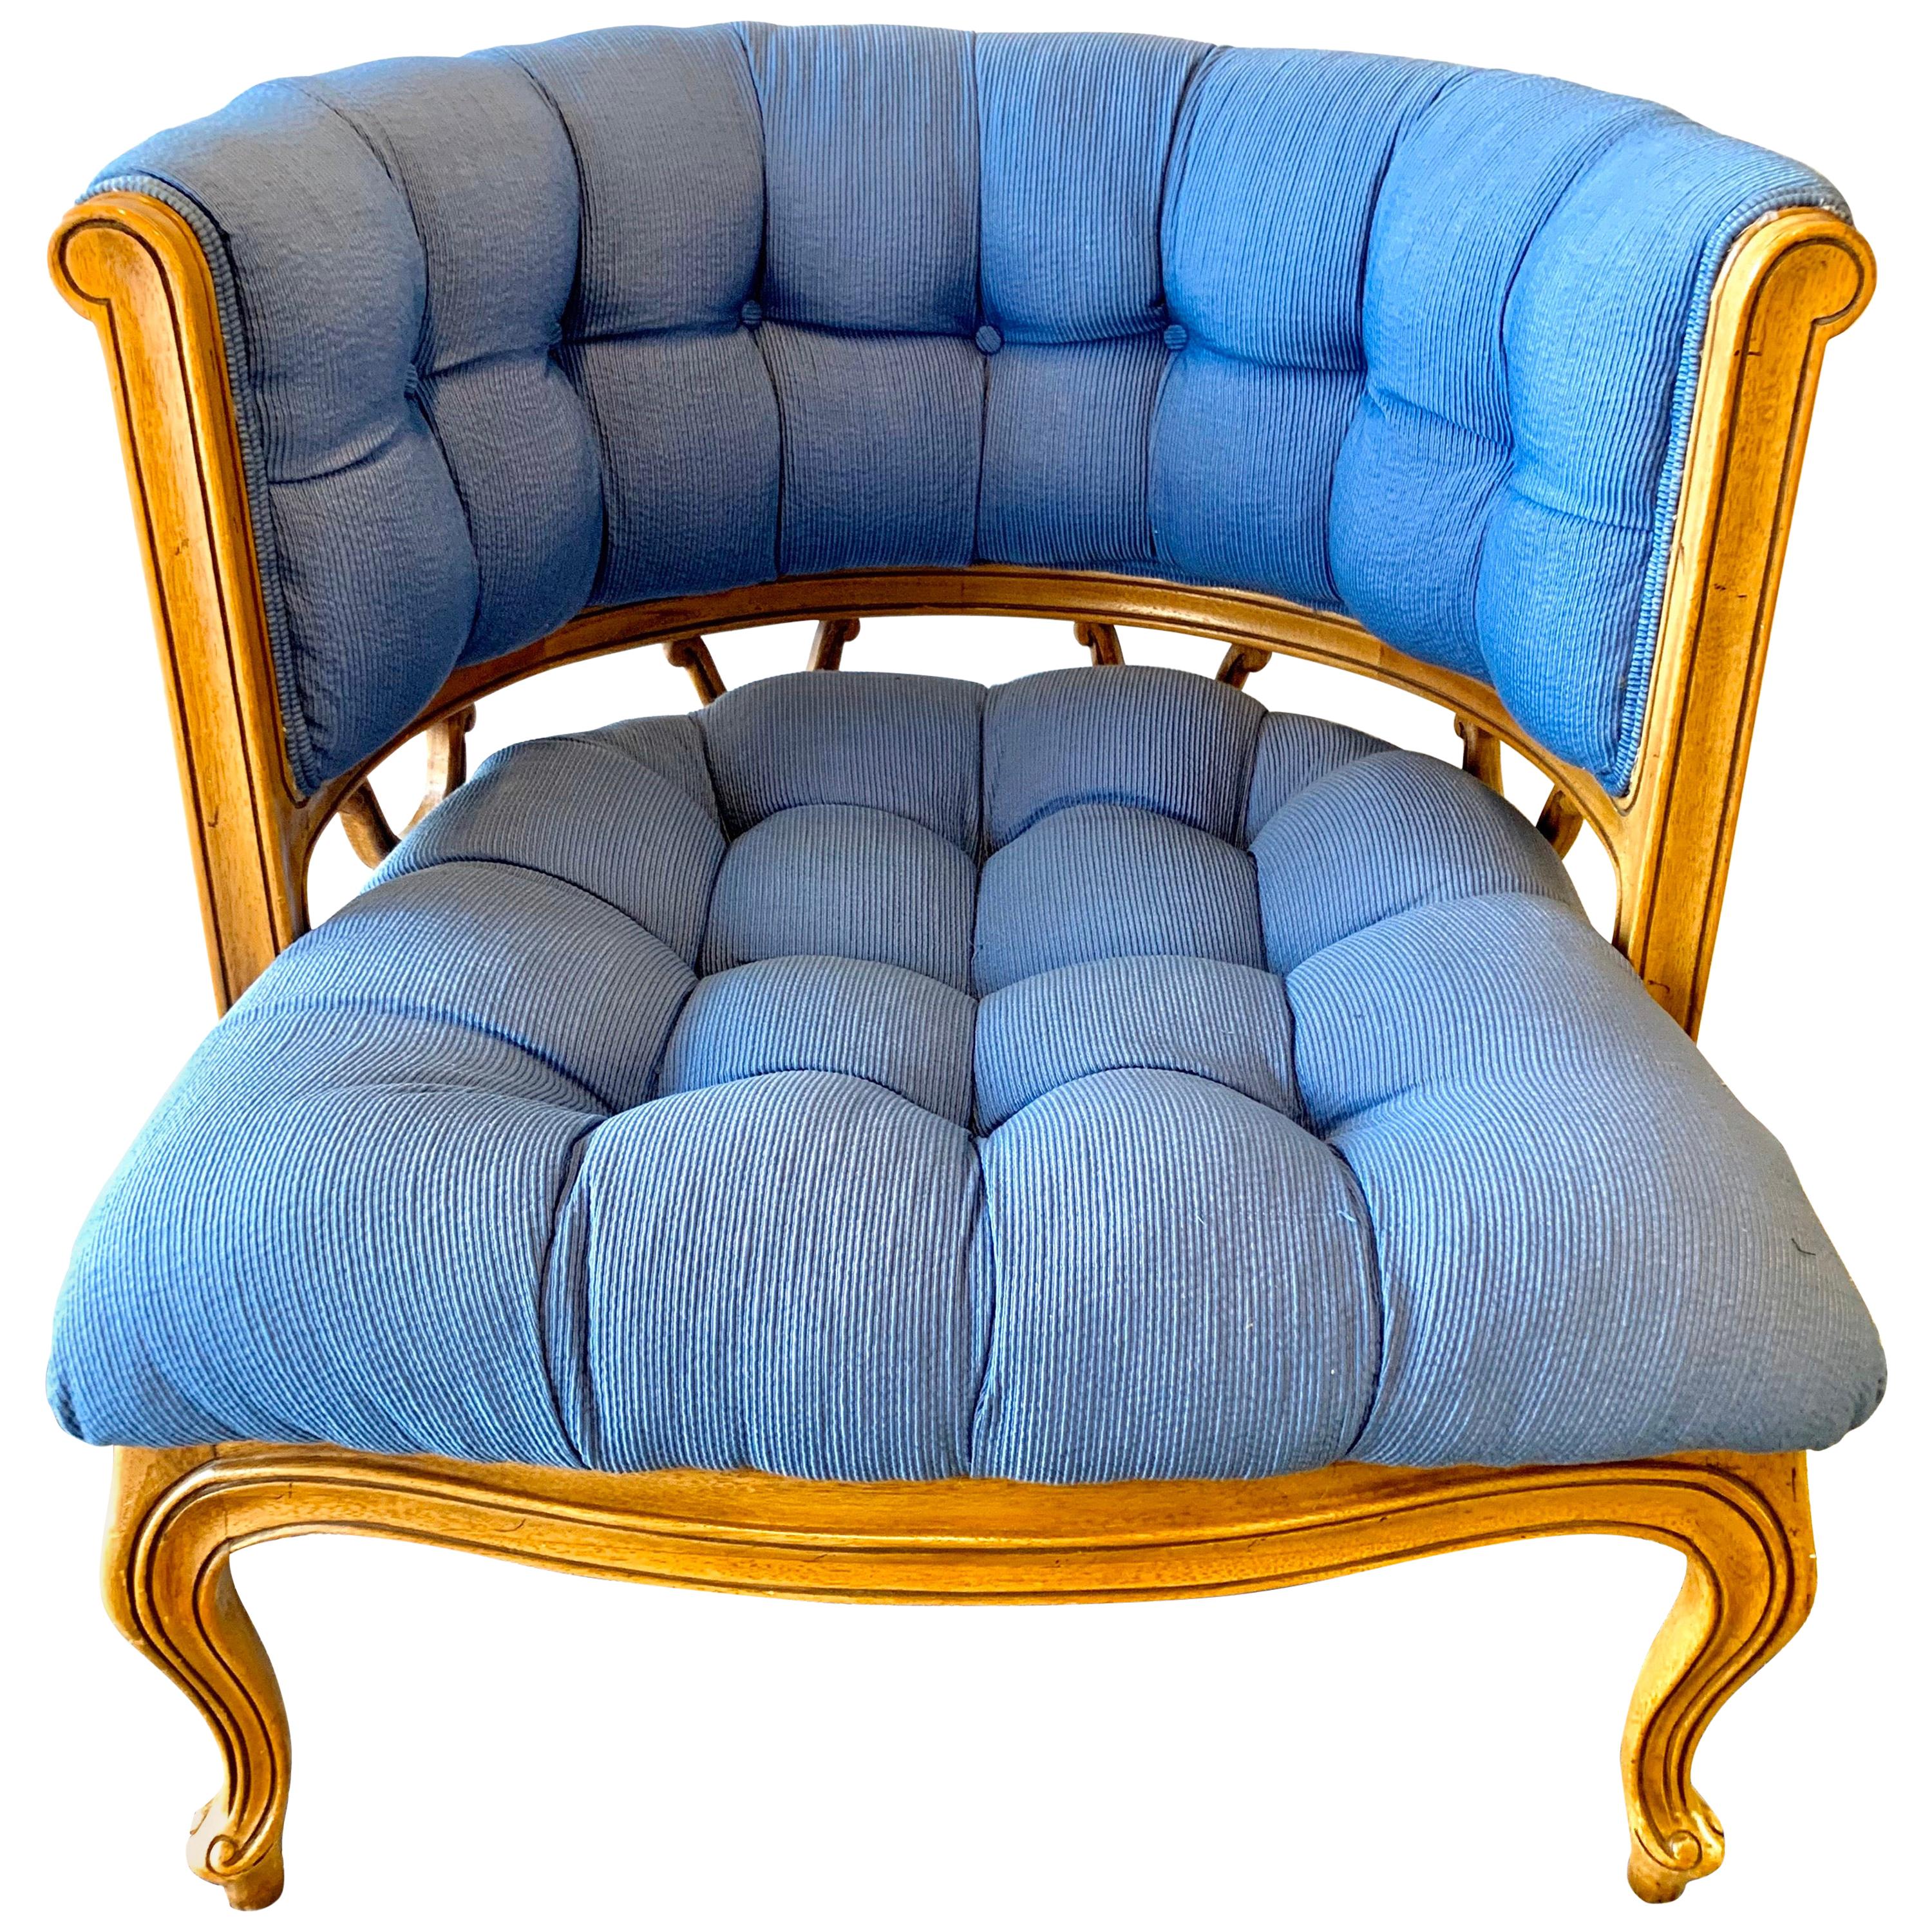 Vintage Curved Tufted Blue Upholstered Barrel Back Armchair